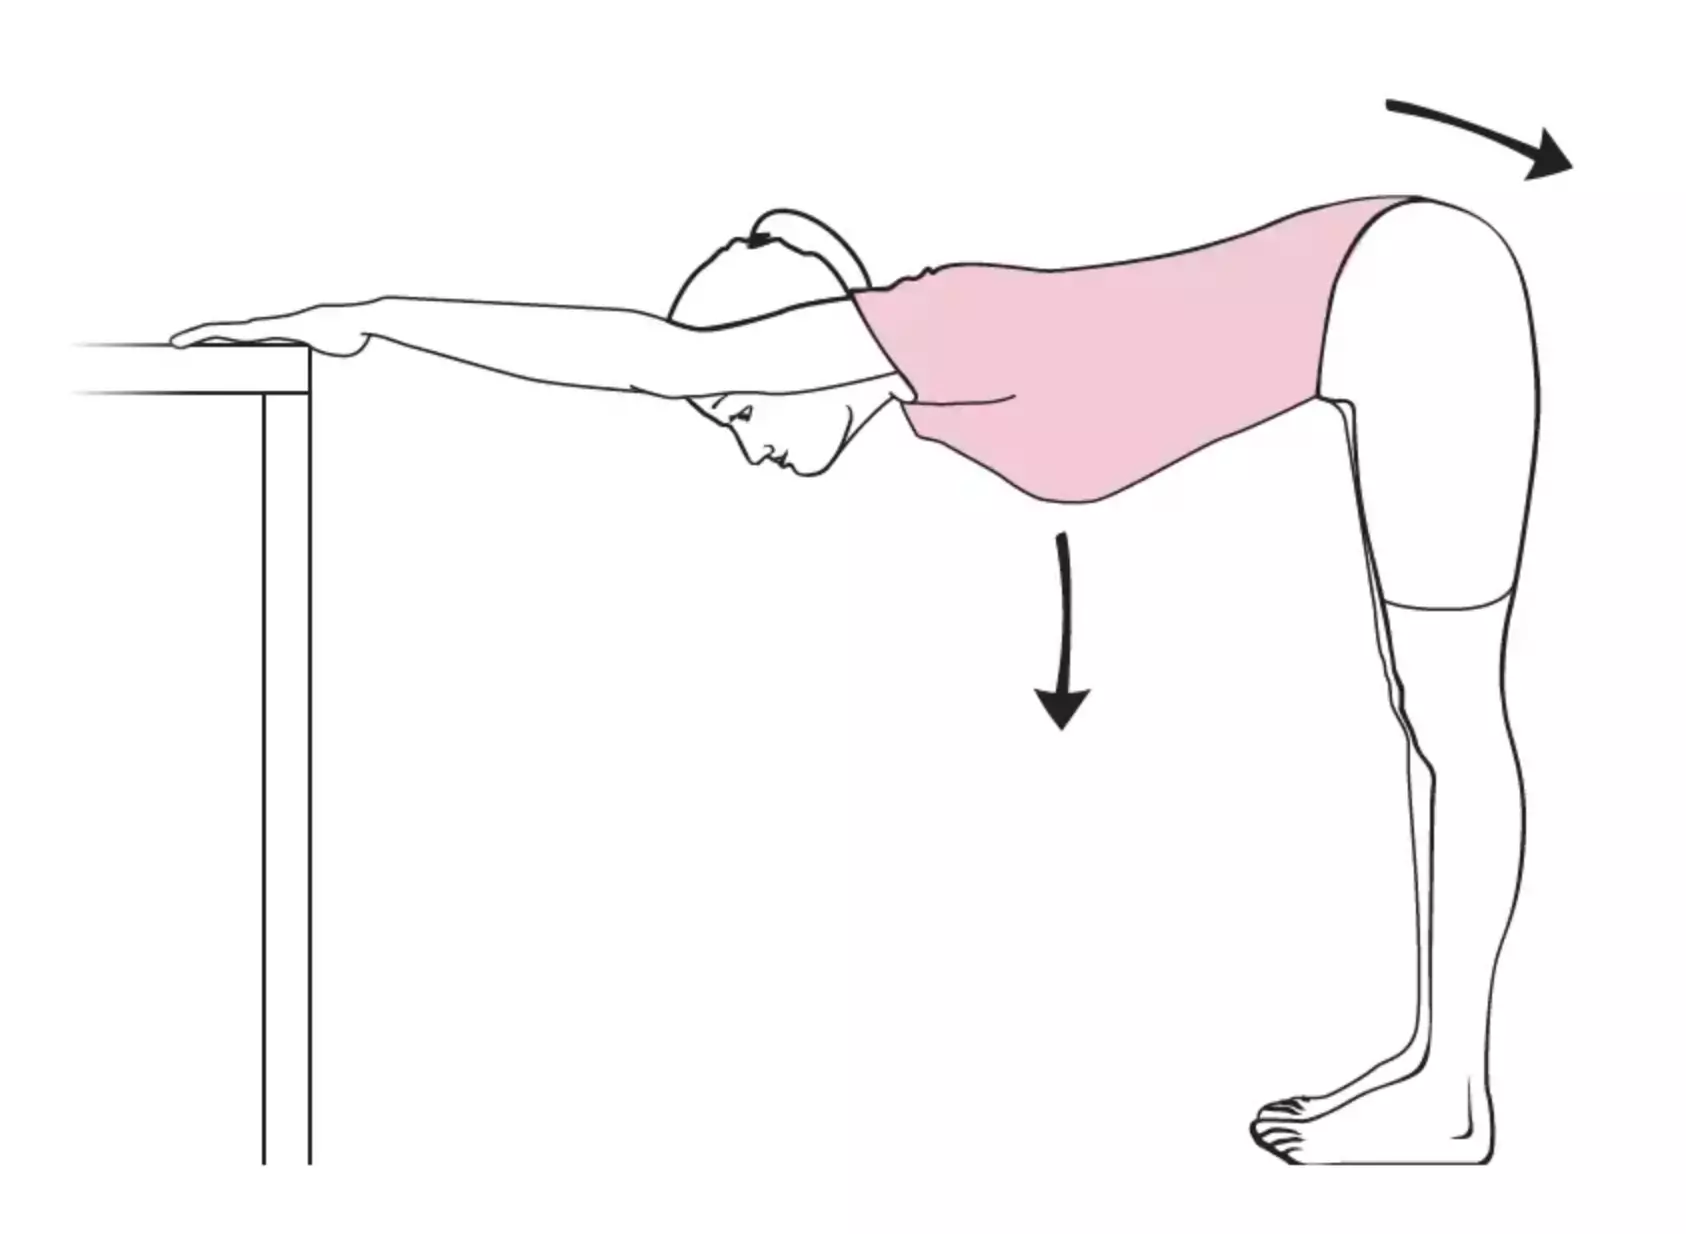 Estiramiento pasivo: con las manos o los antebrazos apoyados en una mesa, desplácese lentamente hacia atrás sin moverlos mientras baja las nalgas. Repítelo de 5 a 10 veces.